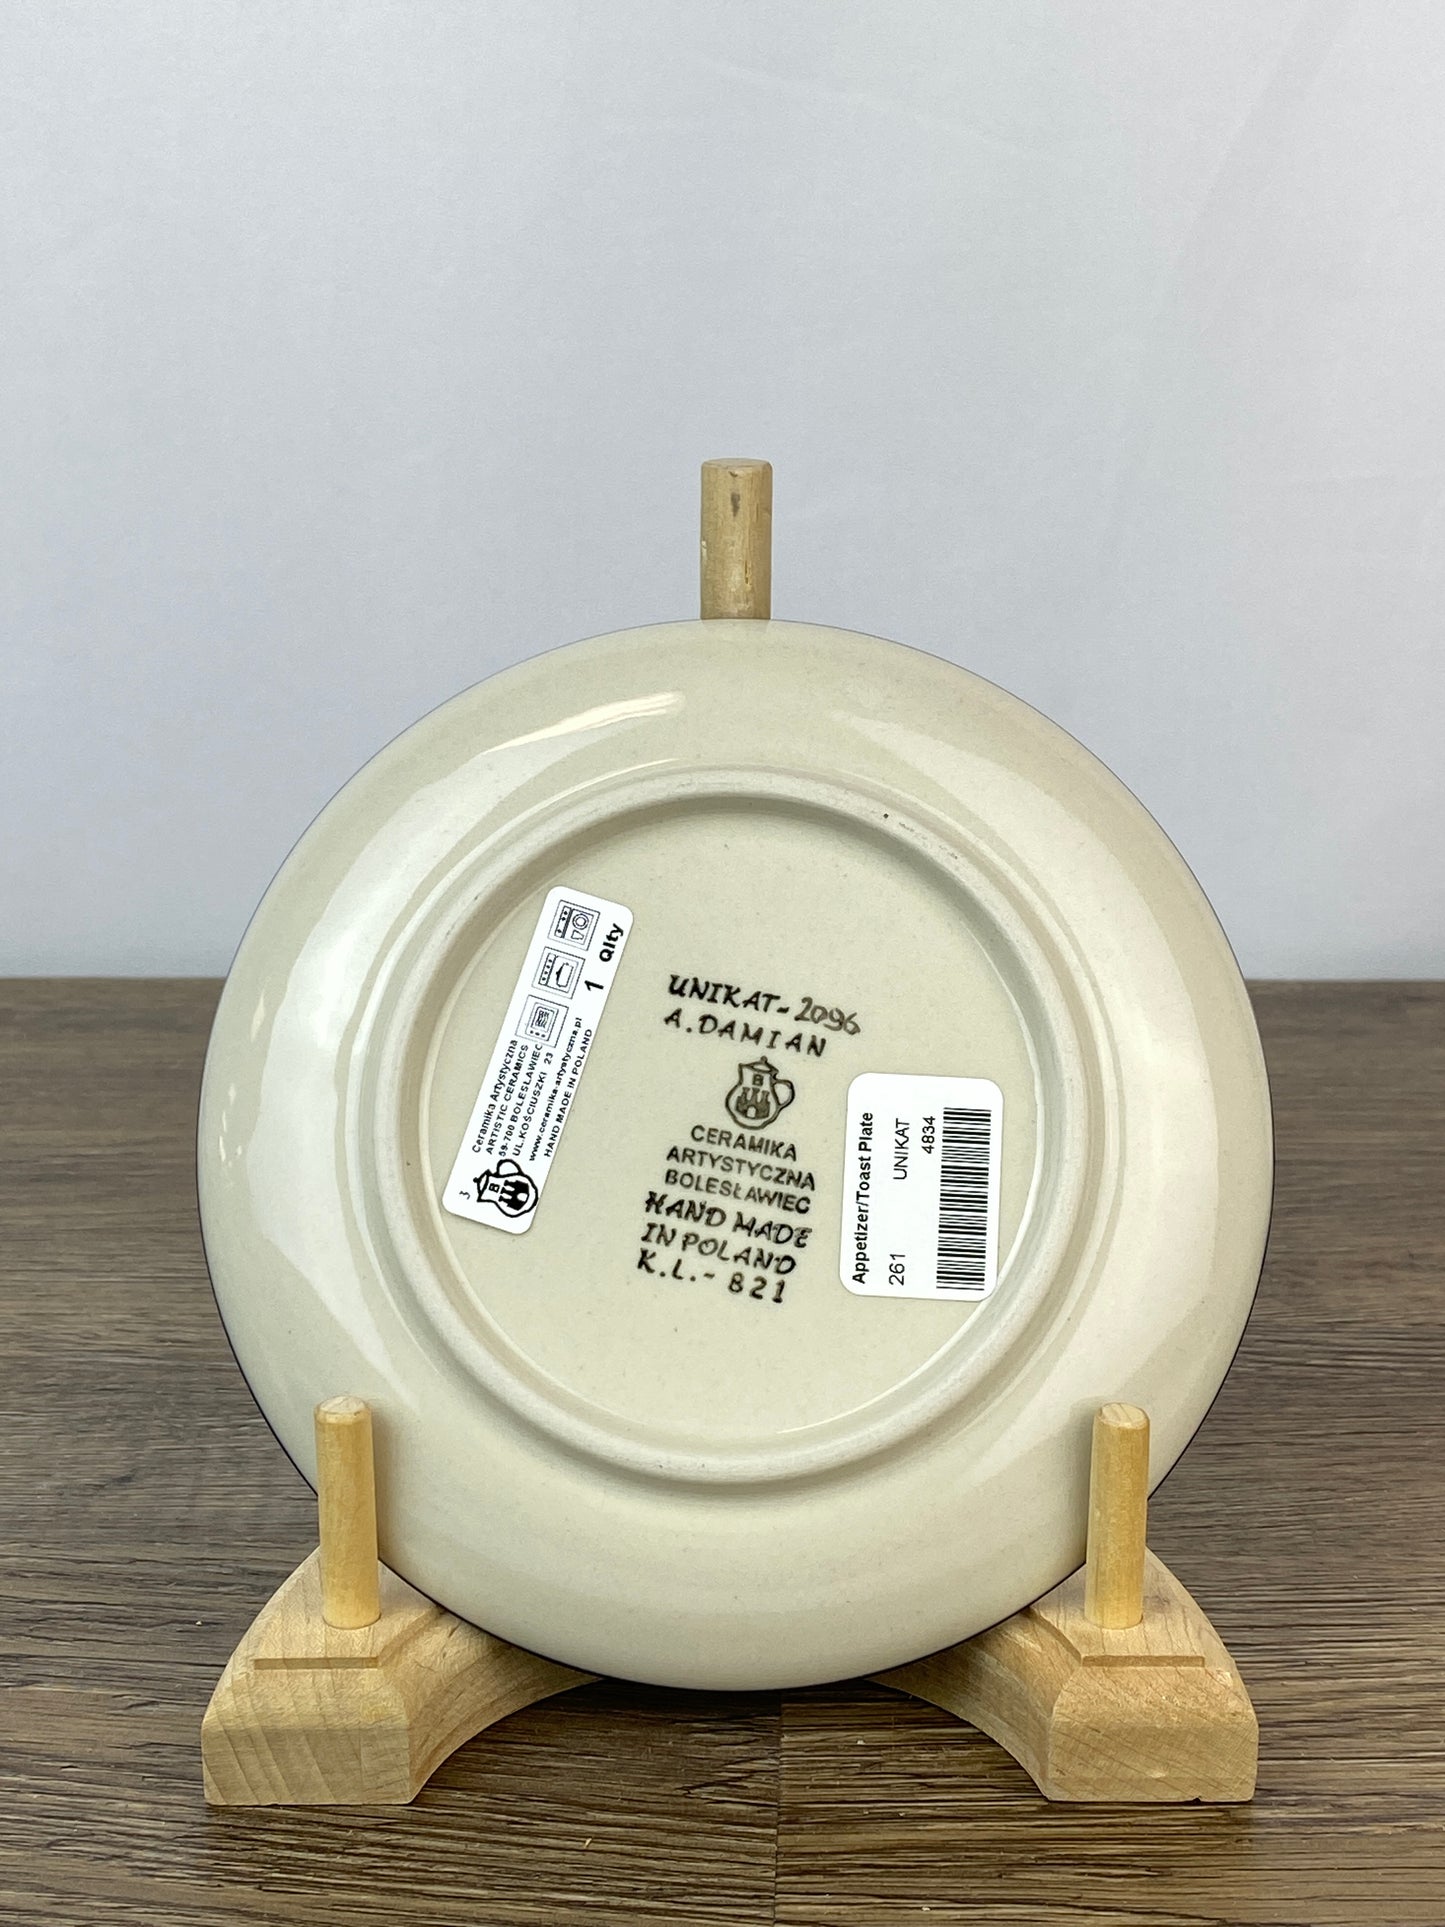 6" Unikat Toast Plate - Shape 261 - Pattern U2096